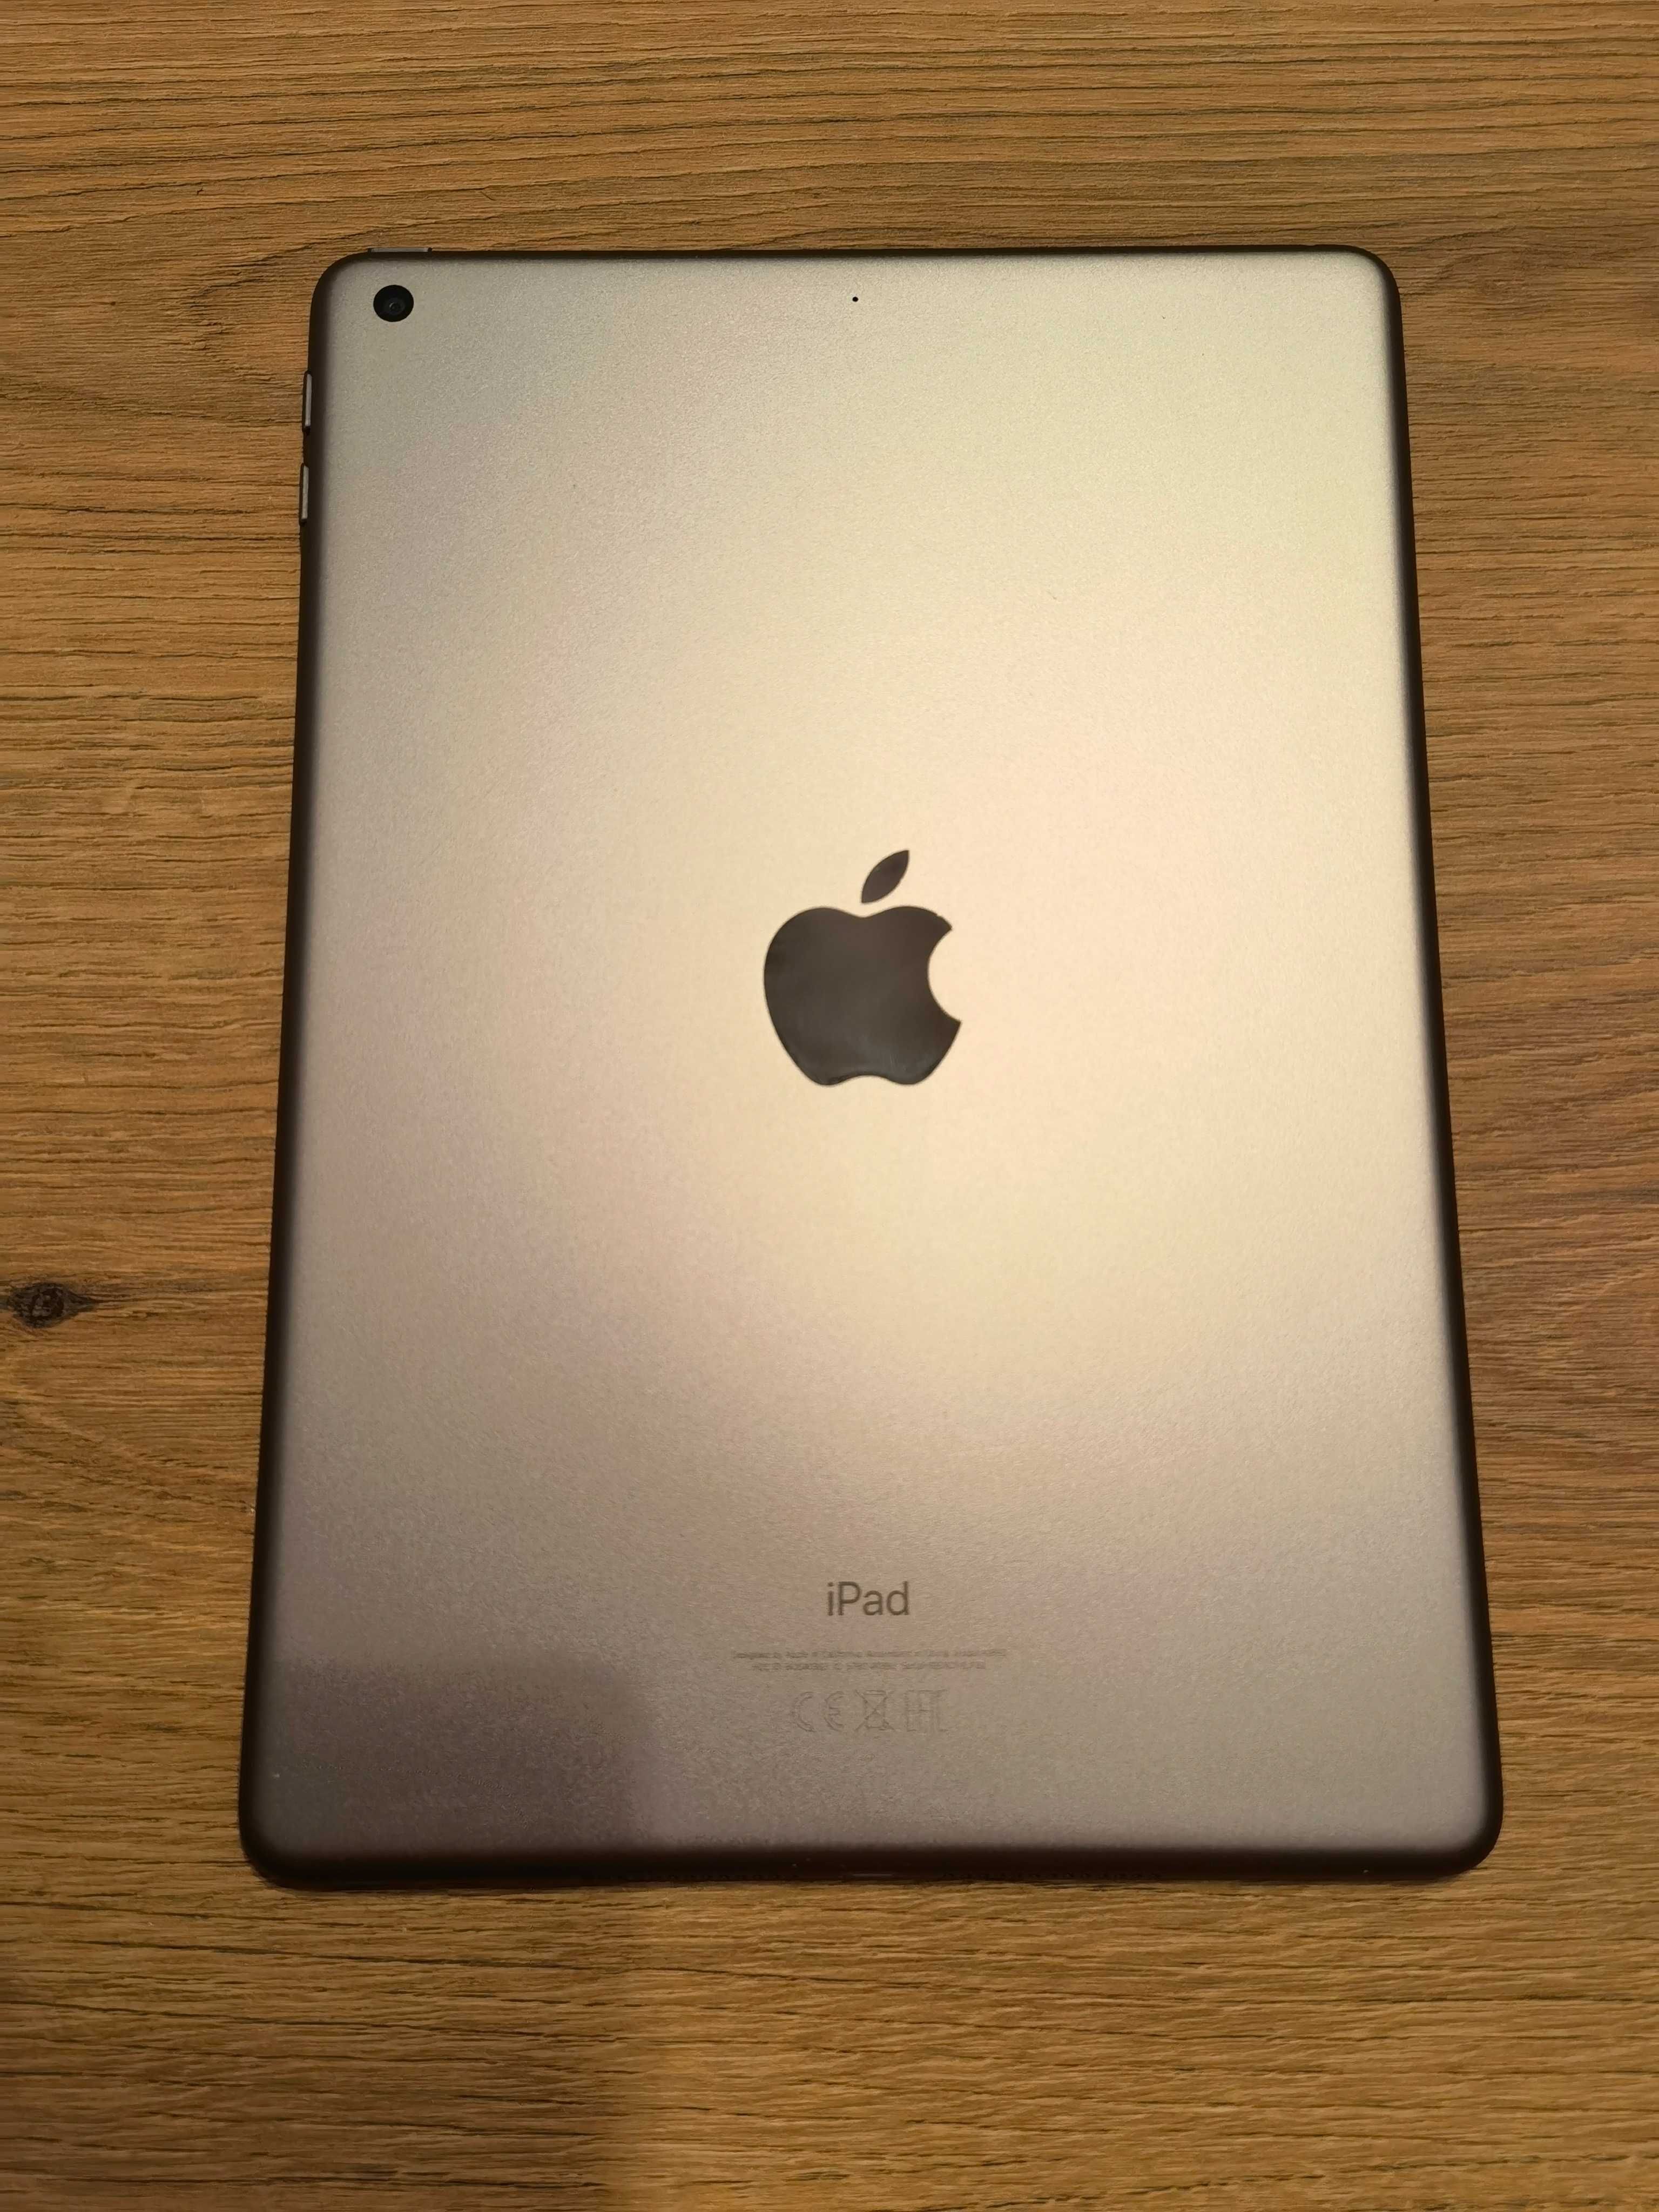 iPad 6th Gen /32GB/2GB RAM/9.7 inches/Silver